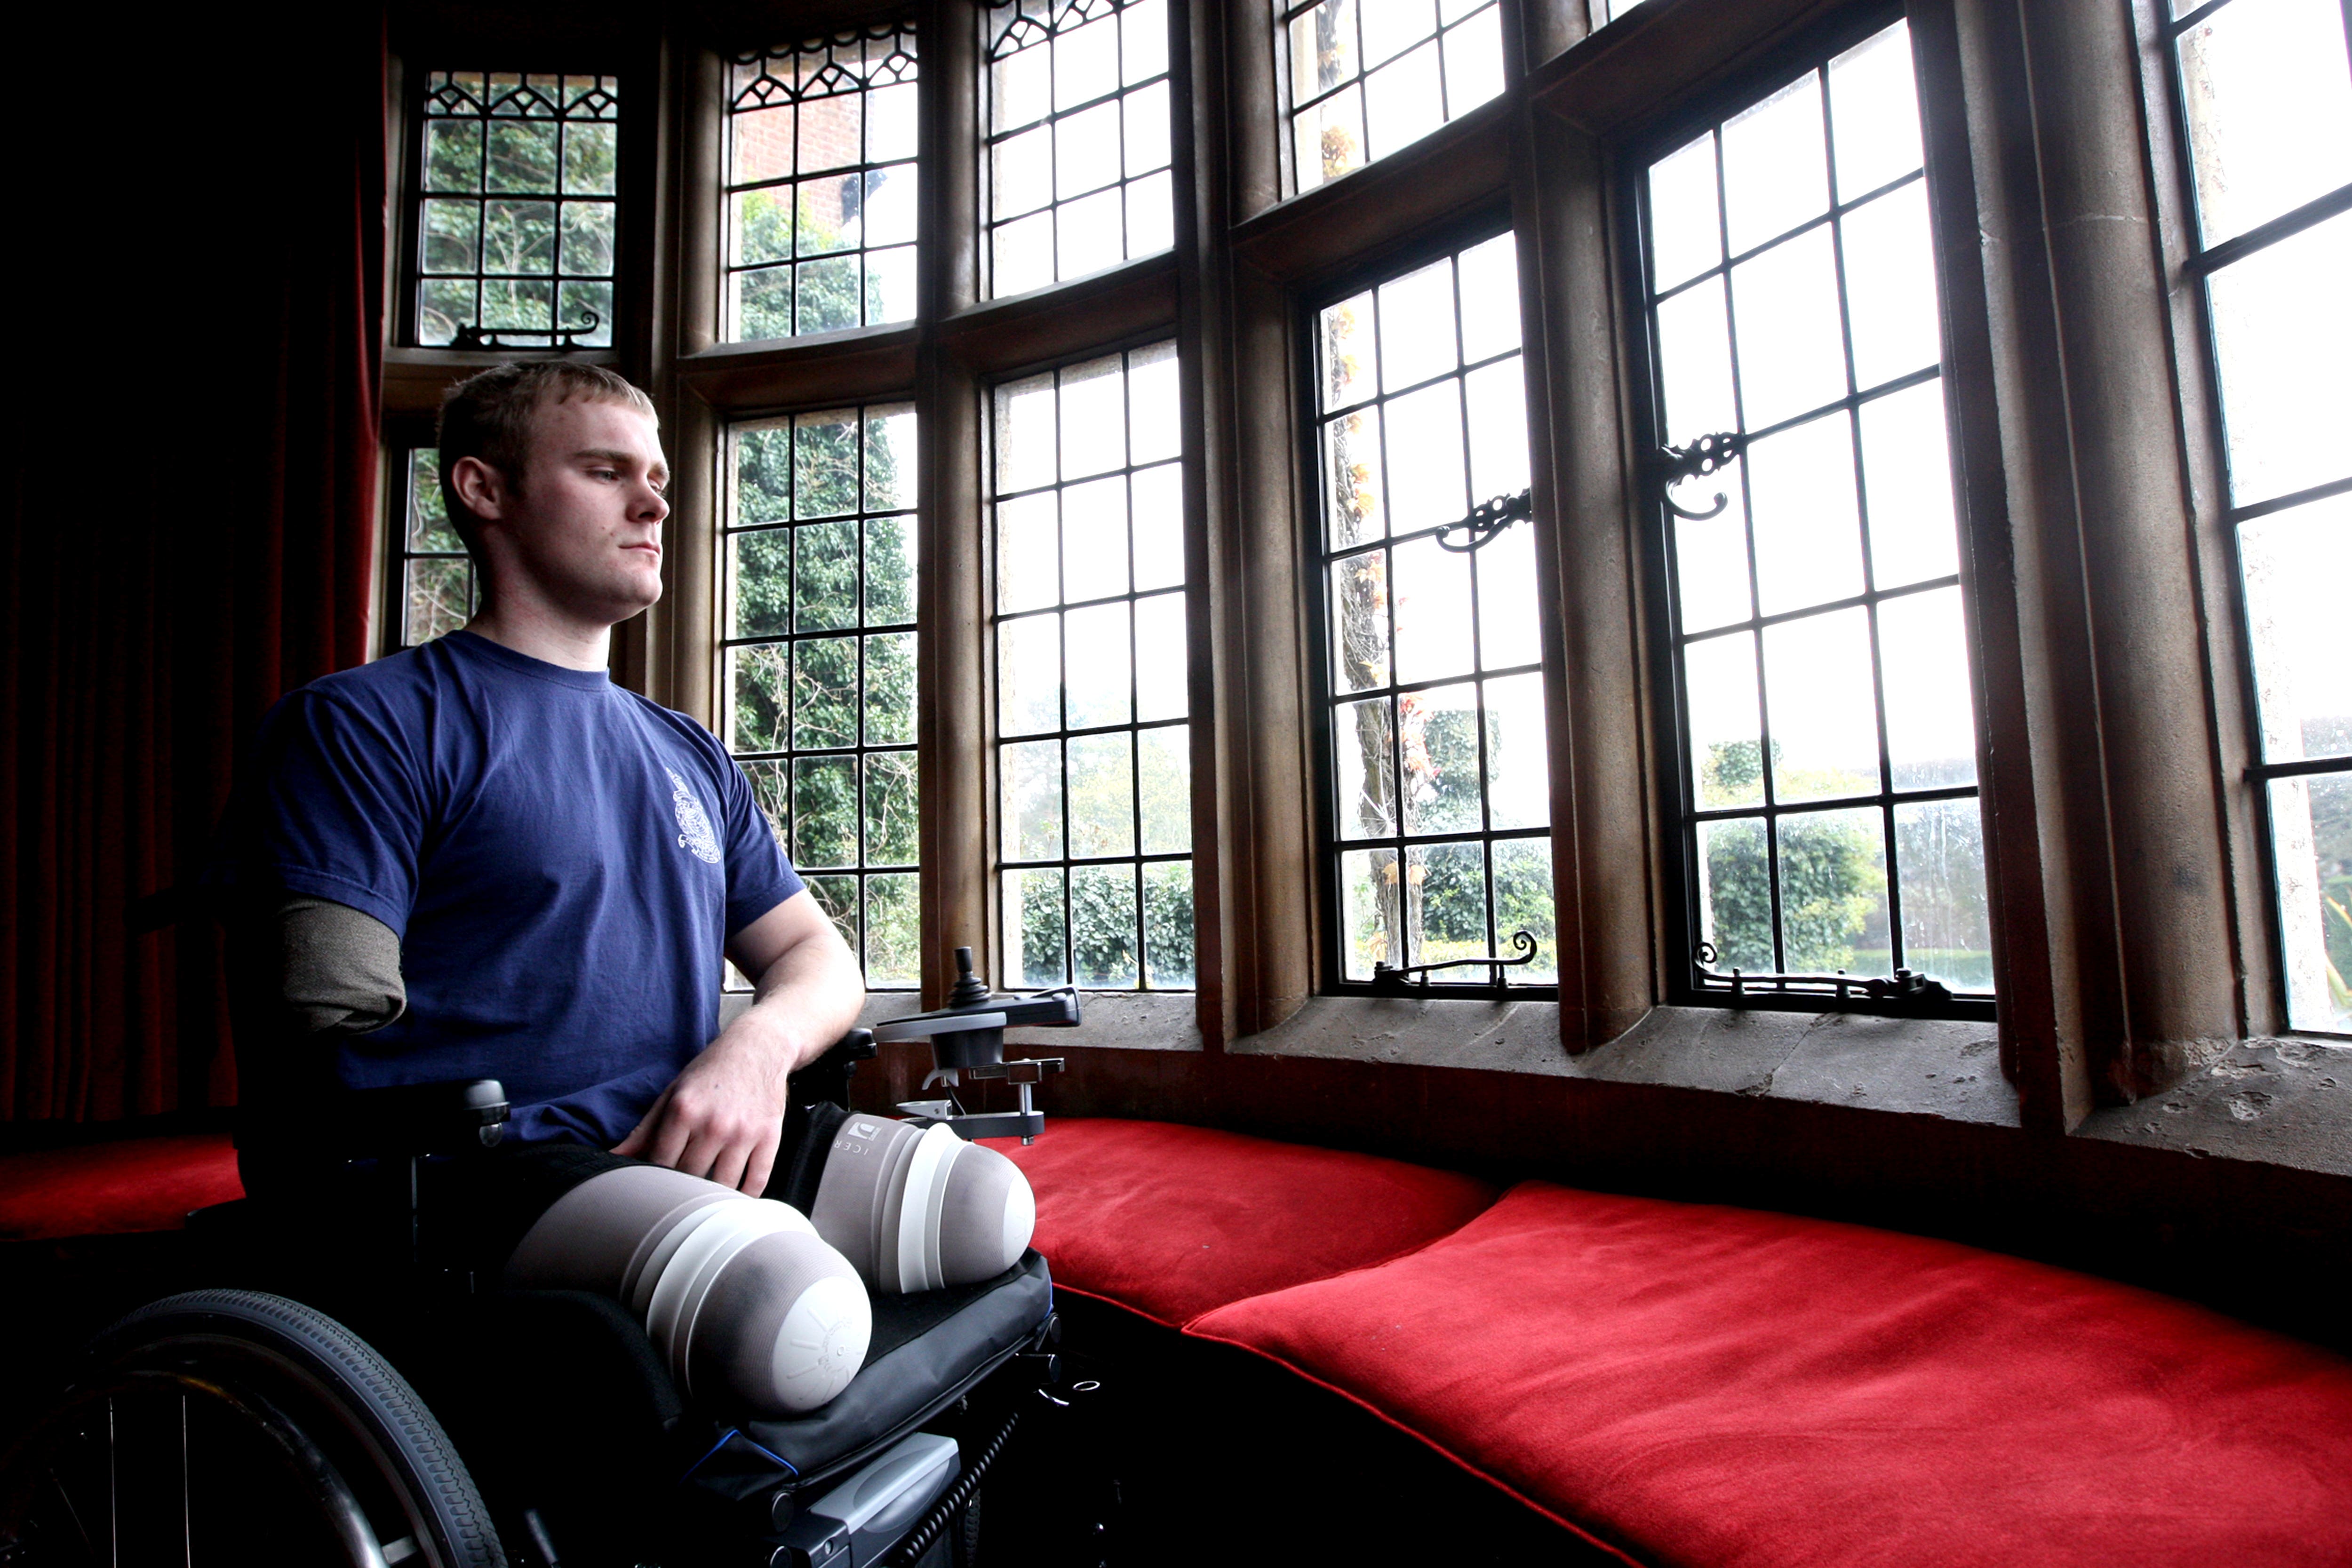 Former Royal Marine Mark Ormrod had his prosthetic legs stolen in a Premier Inn car park